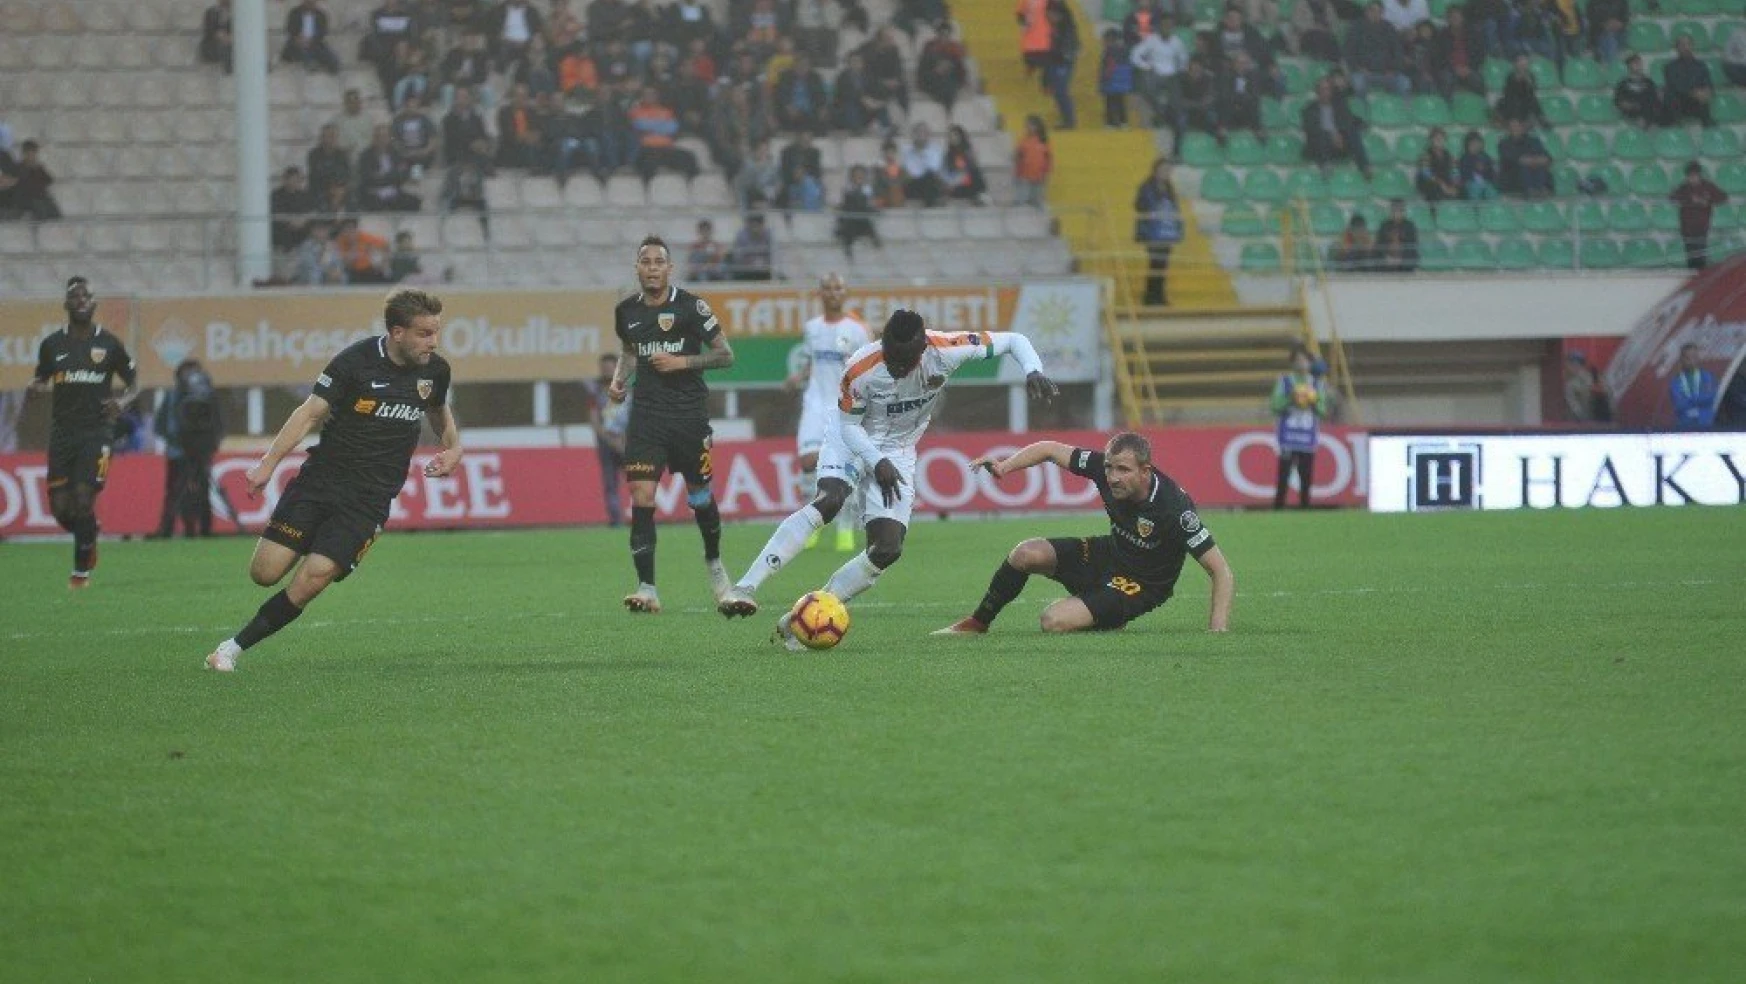 Spor Toto Süper Lig: Aytemiz Alanyaspor: 5 - Kayserispor: 0 (maç sonucu)